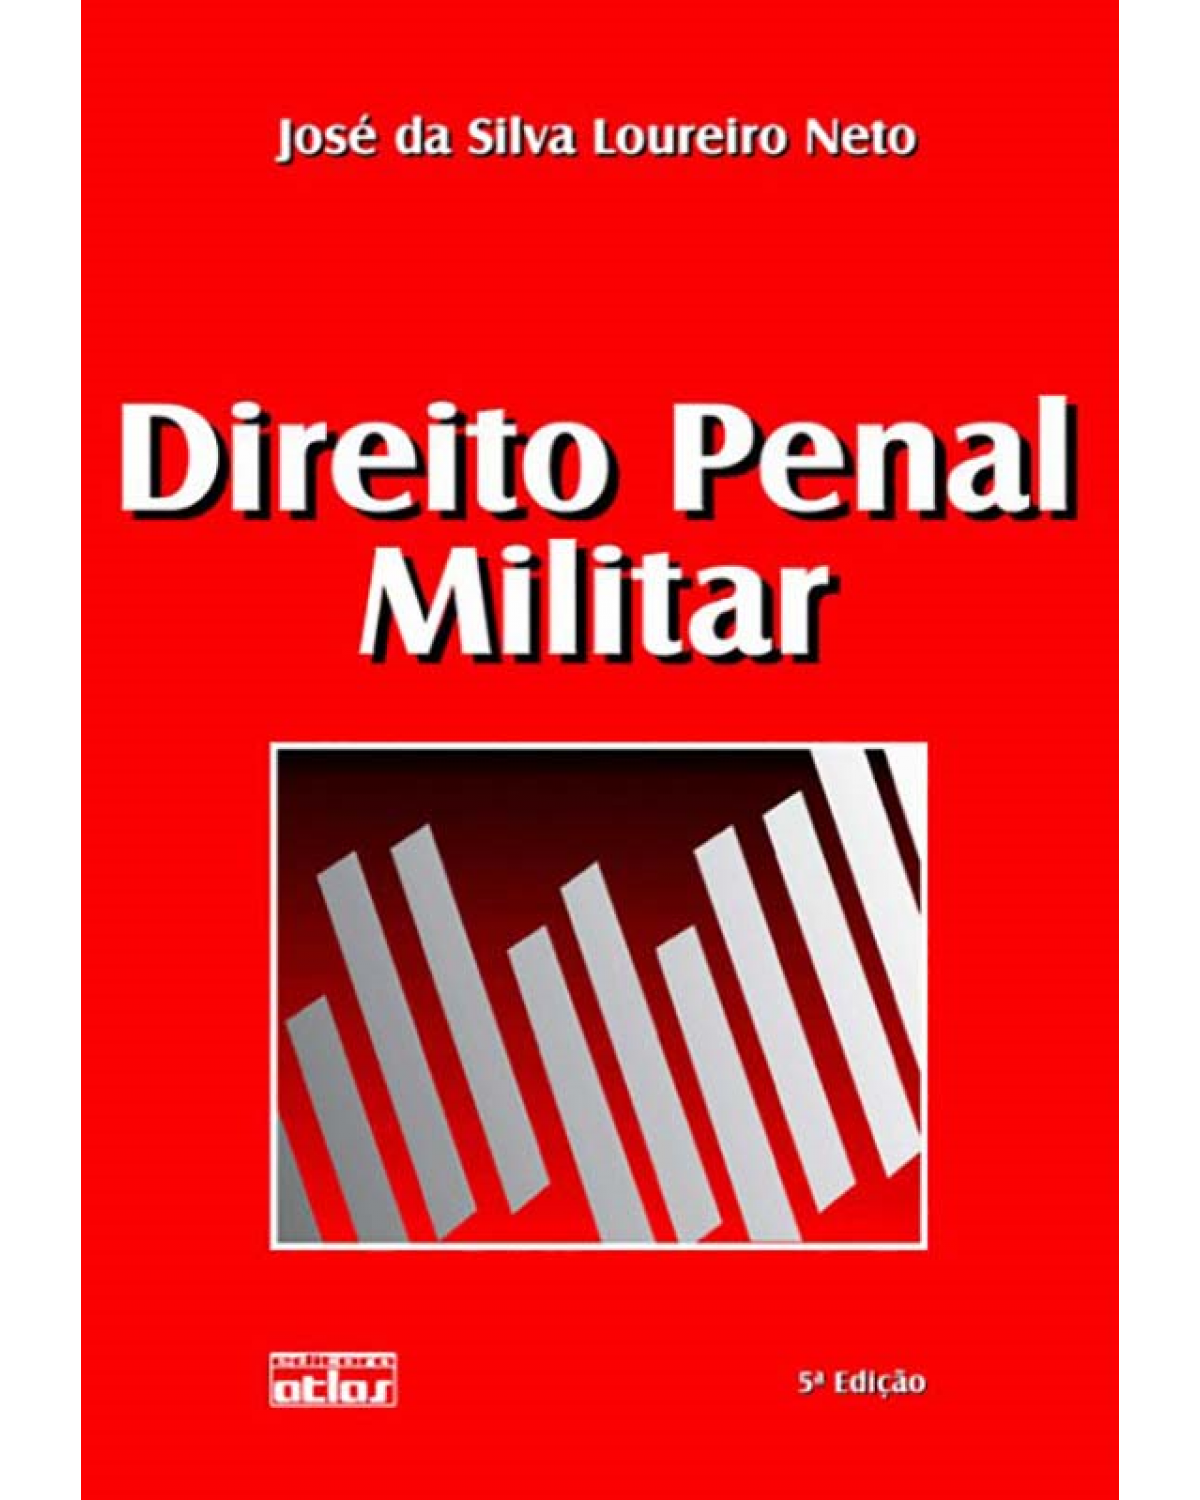 Direito penal militar - 5ª Edição | 2010